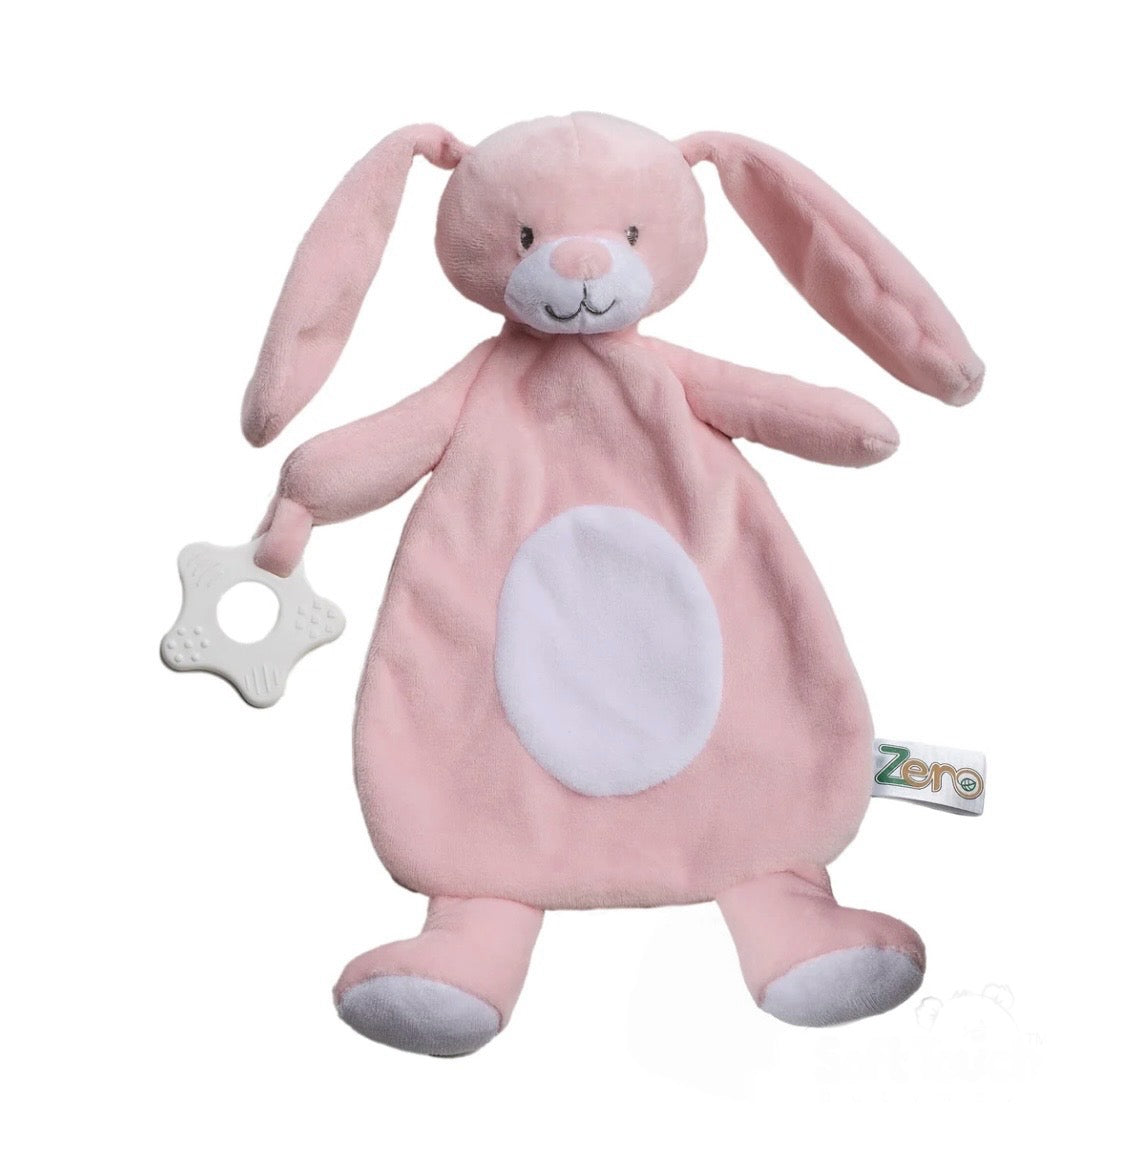 Eco baby comforter with Teether- Bunny